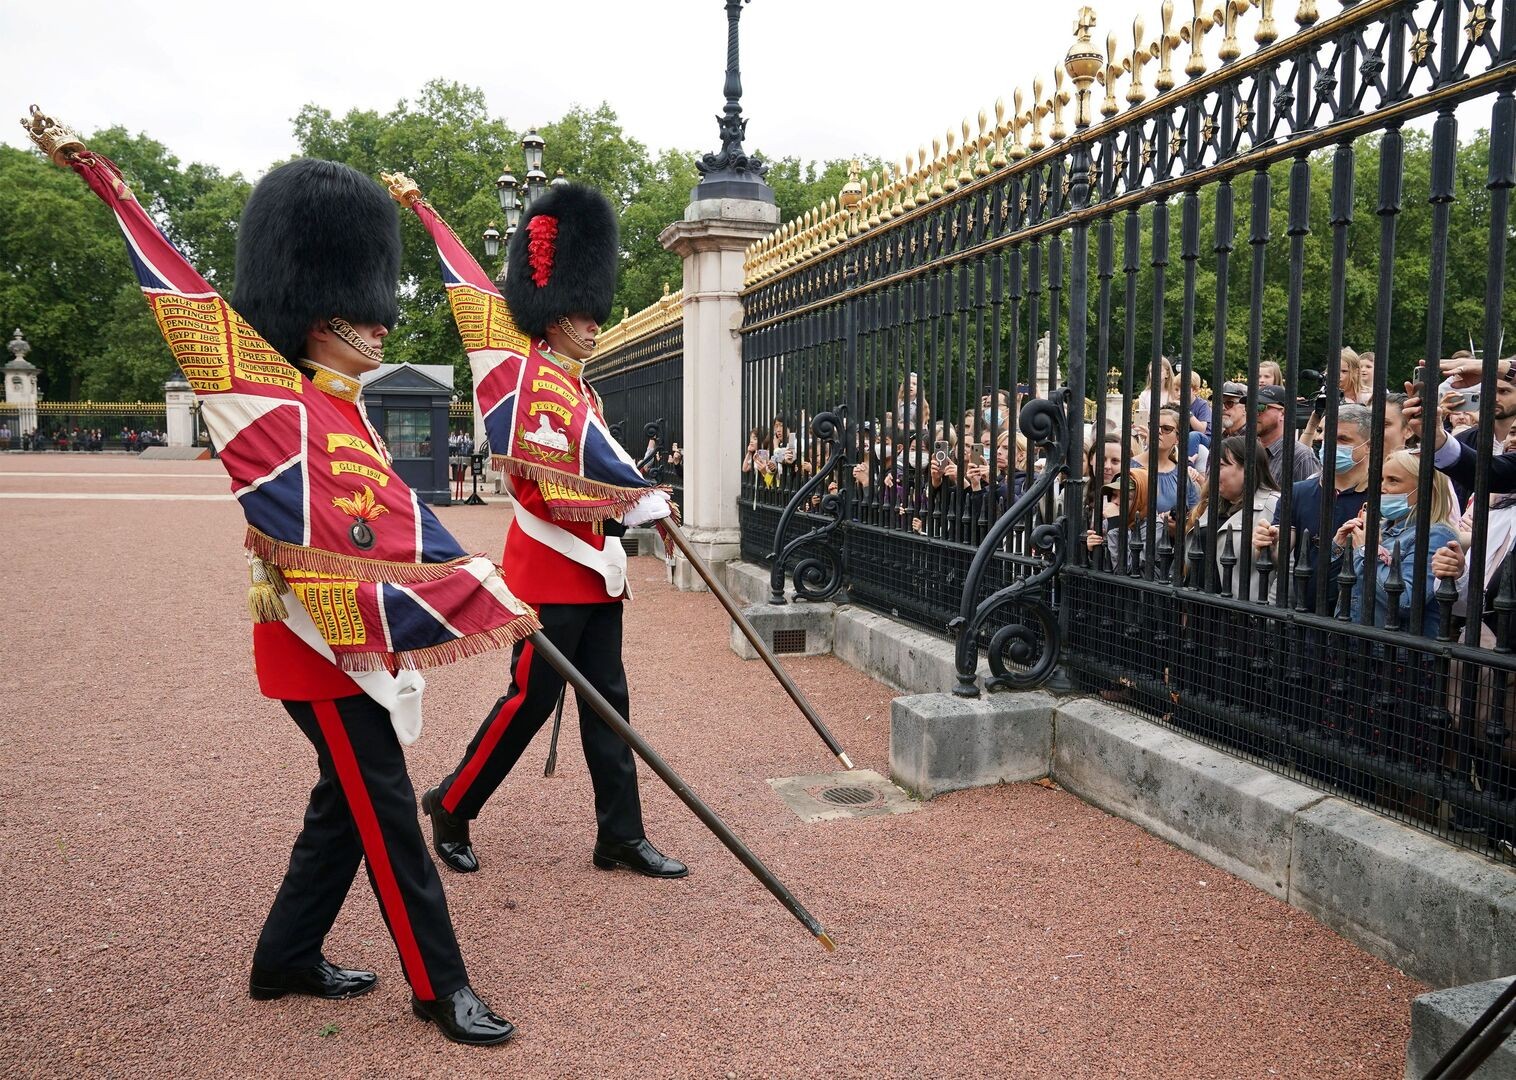 شاهد: بعد توقف لأكثر من عام بسبب كورونا "قصر باكينغهام" يعيد مراسم تبديل الحرس